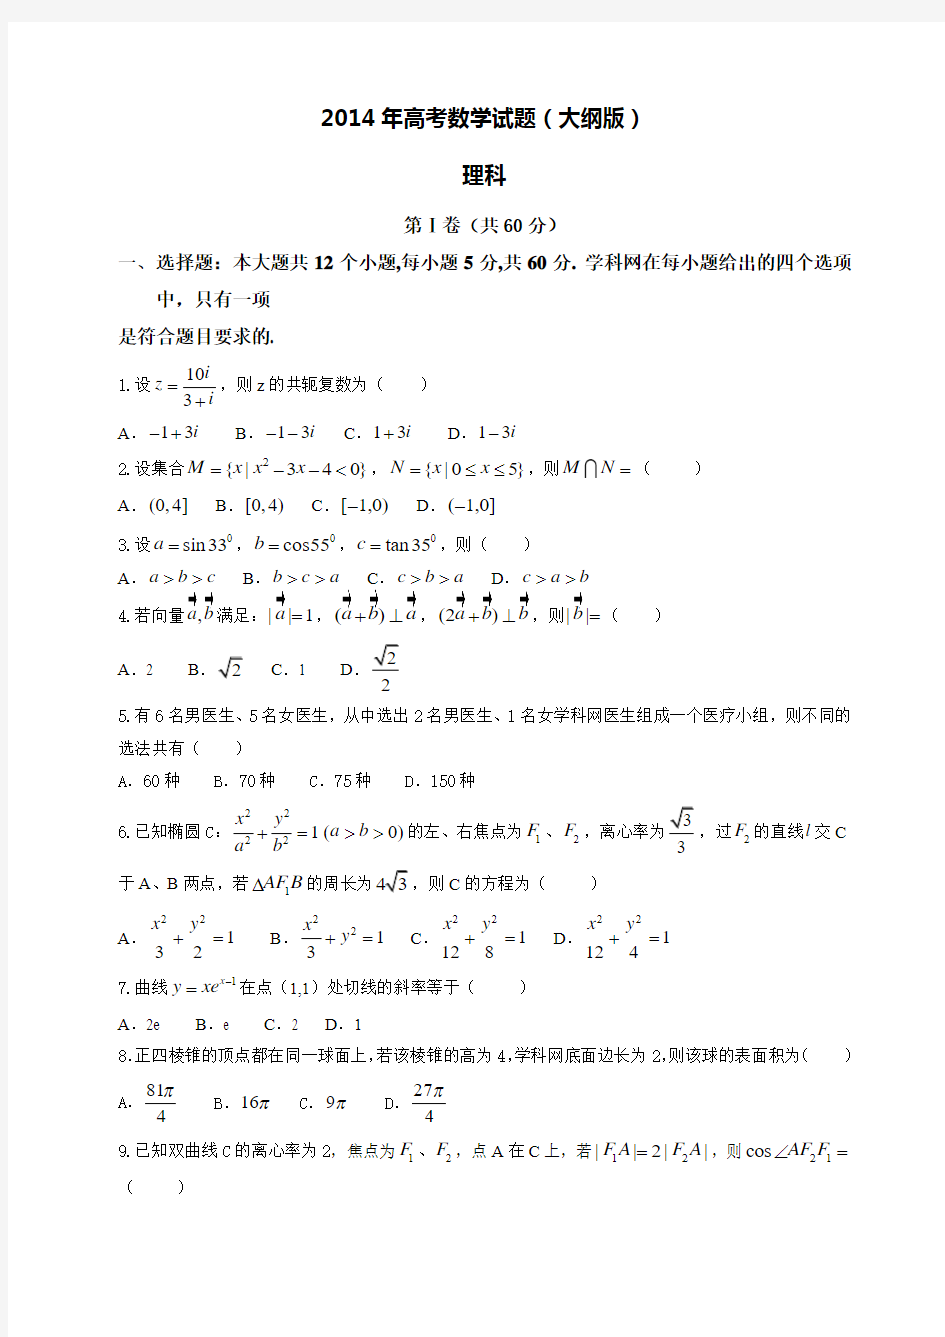 2014年高考数学试题(大纲版)